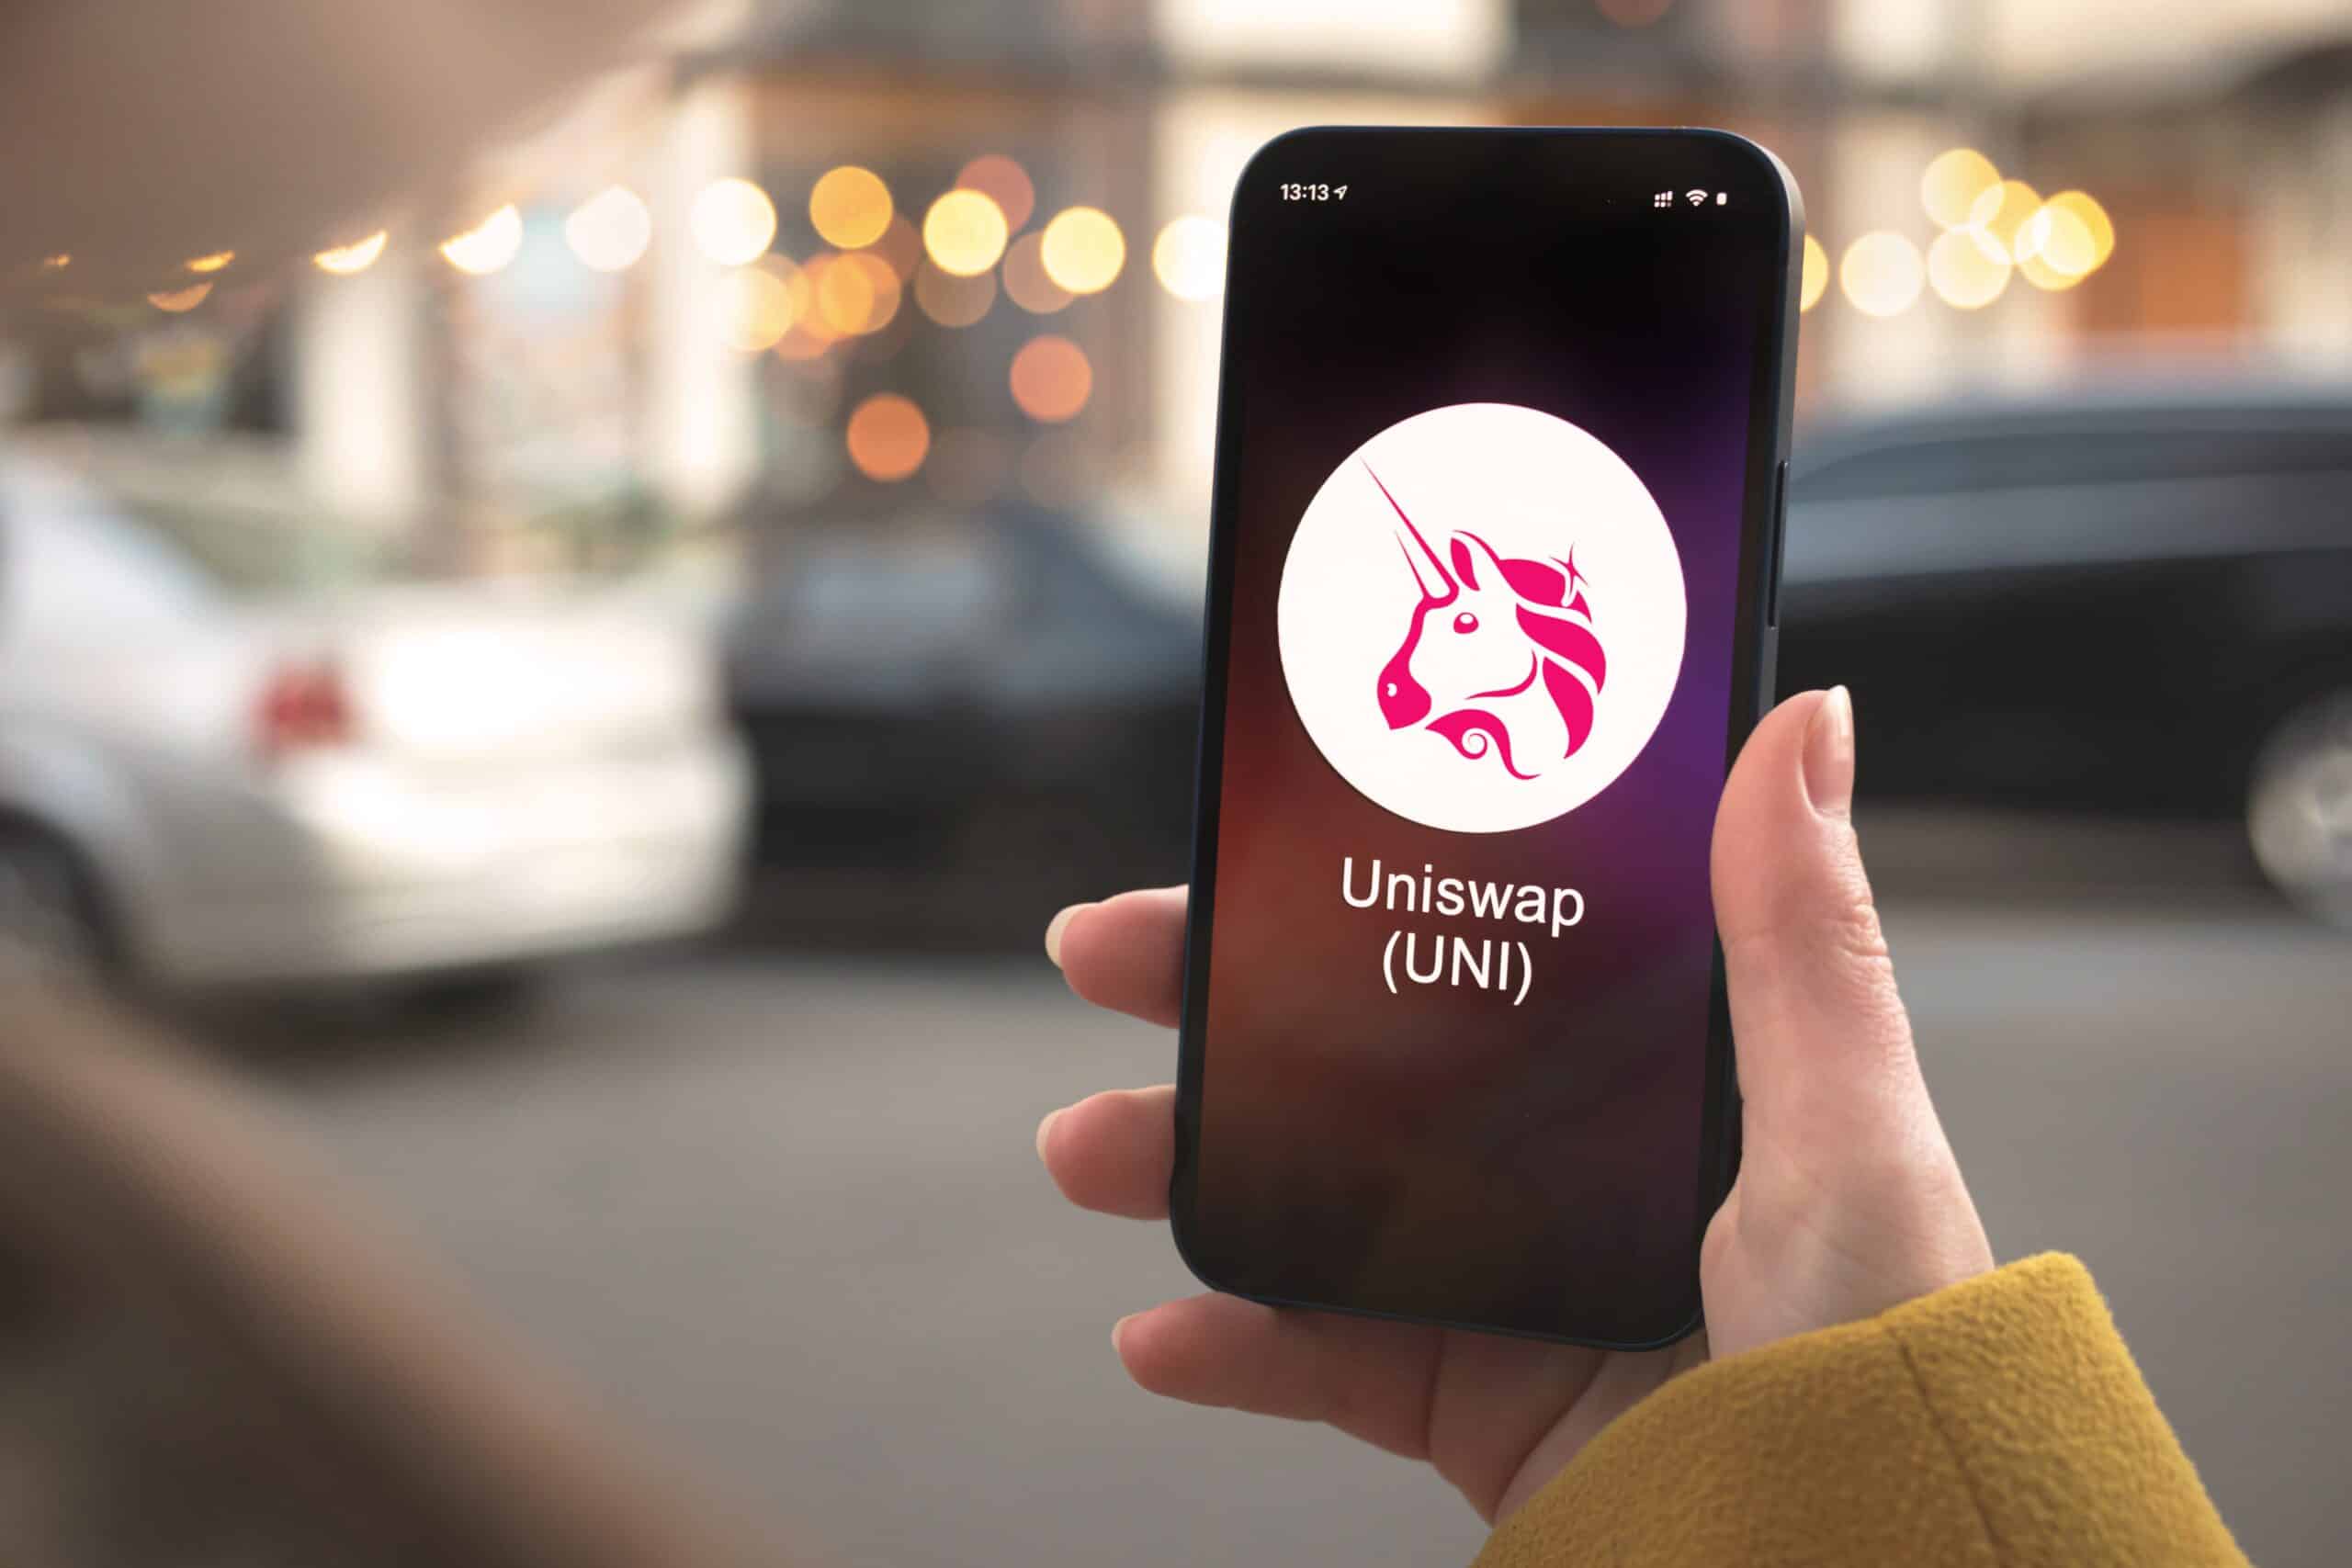 Az Uniswap rózsaszín egyszarvú logója egy személy kezében lévő telefonon látható